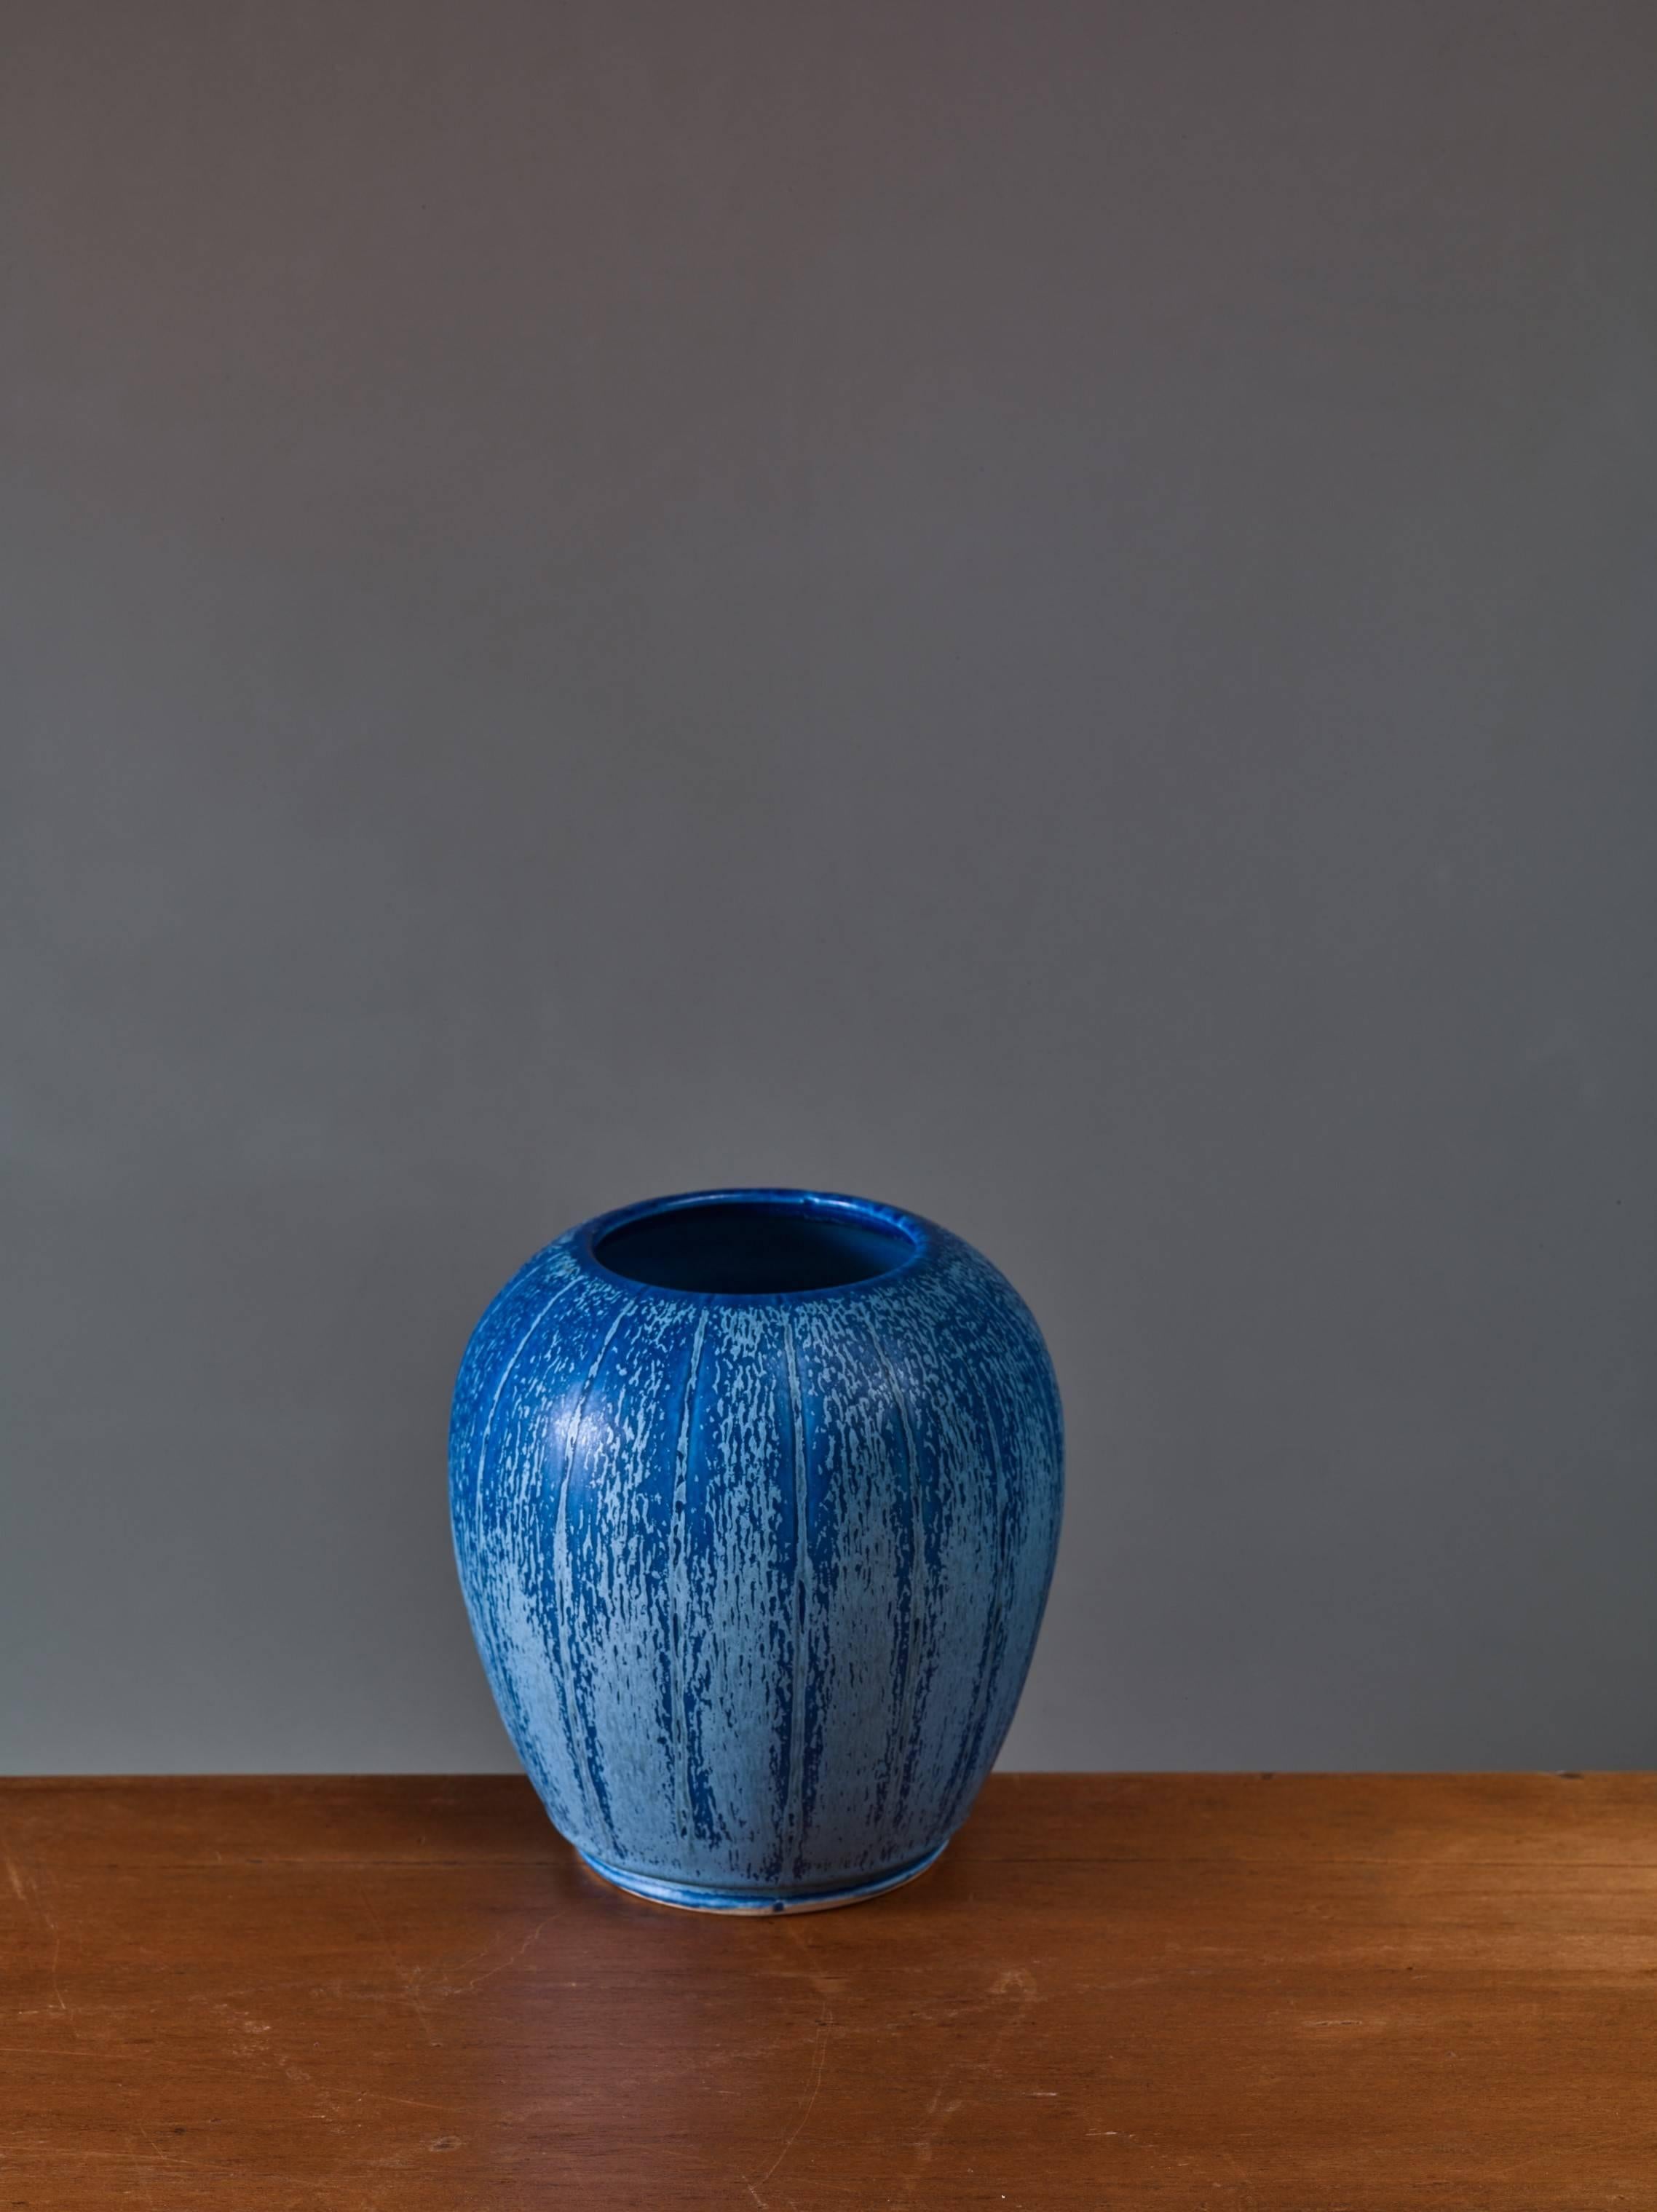 Eine Keramikvase von Eva Jancke-Björk für Bo Fajans, 1948-1951.
Die Vase hat eingeschnittene Streifen und eine Glasur in Blautönen. Eva Jancke-Björk für Bo Fajans,
Gezeichnet 